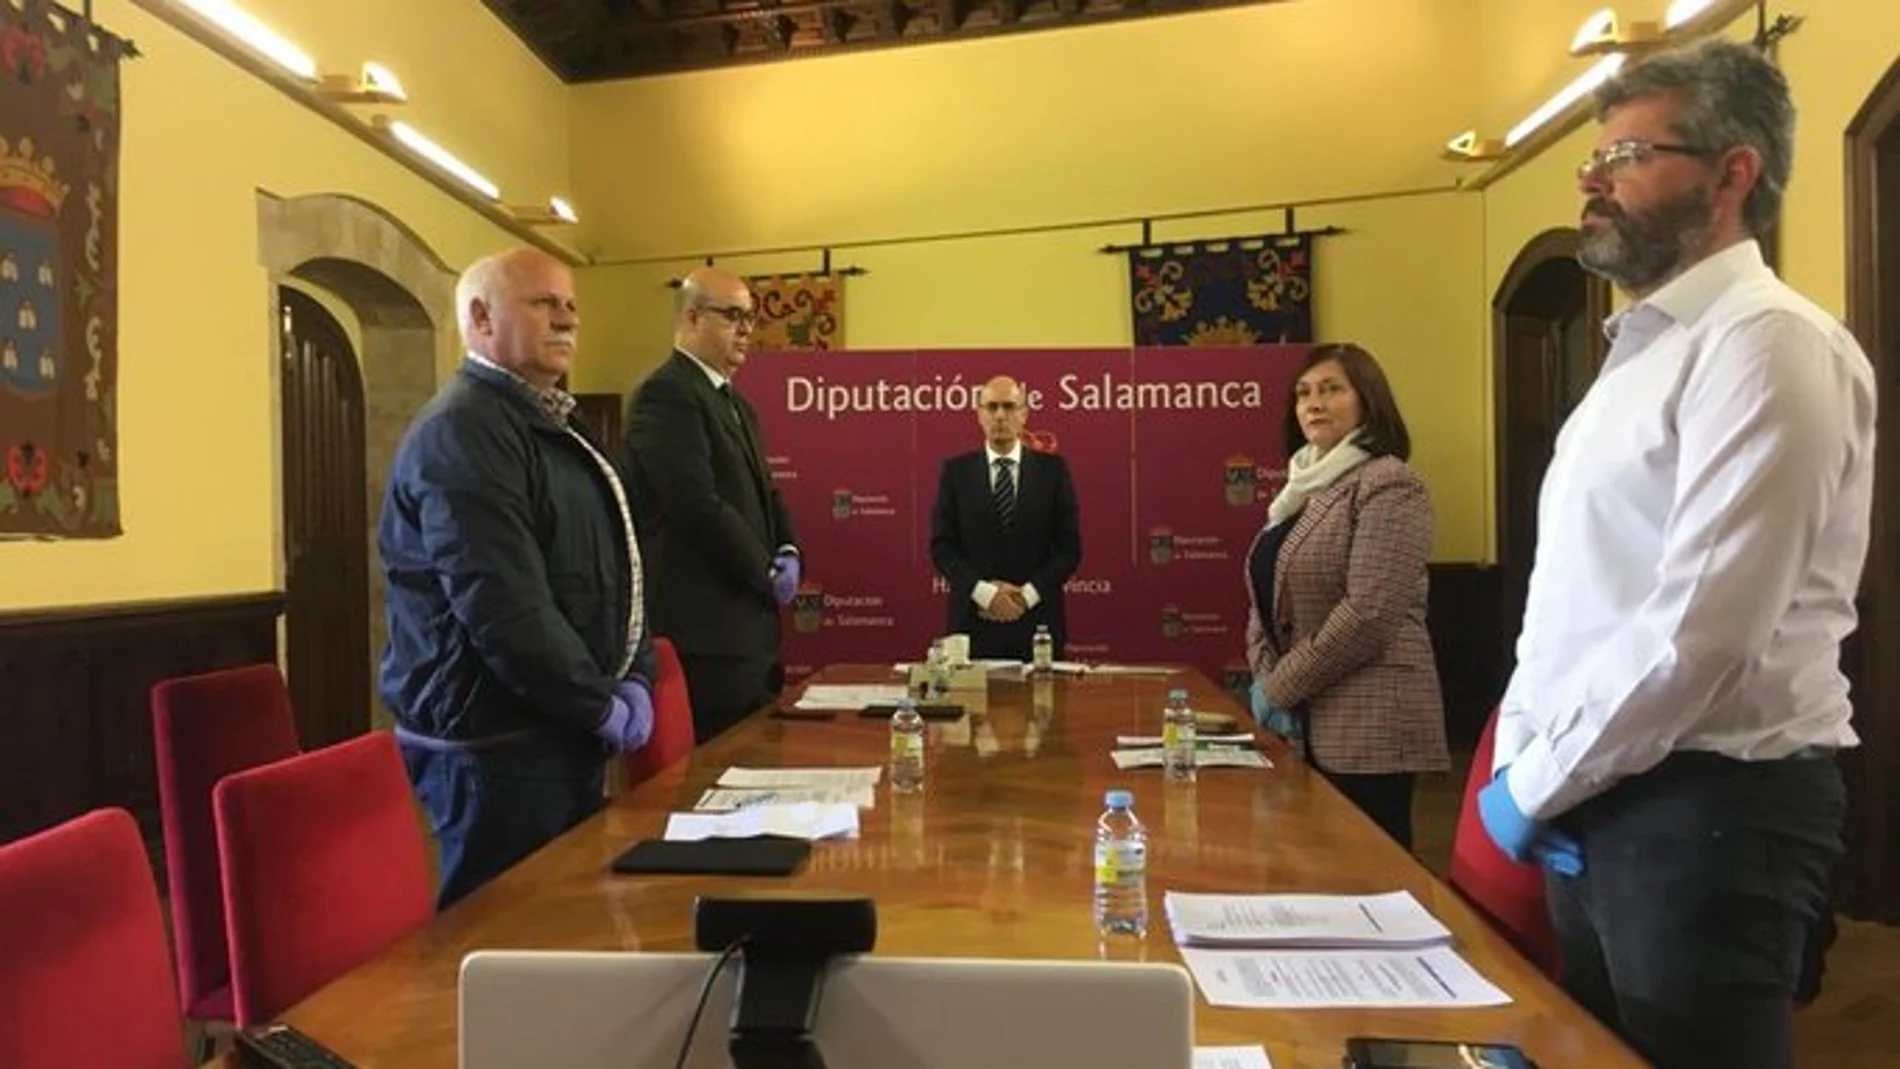 Javier Iglesias preside el pleno telemático de la Diputación de Salamanca que contó de manera presencial con un representante de cada de uno de los grupos